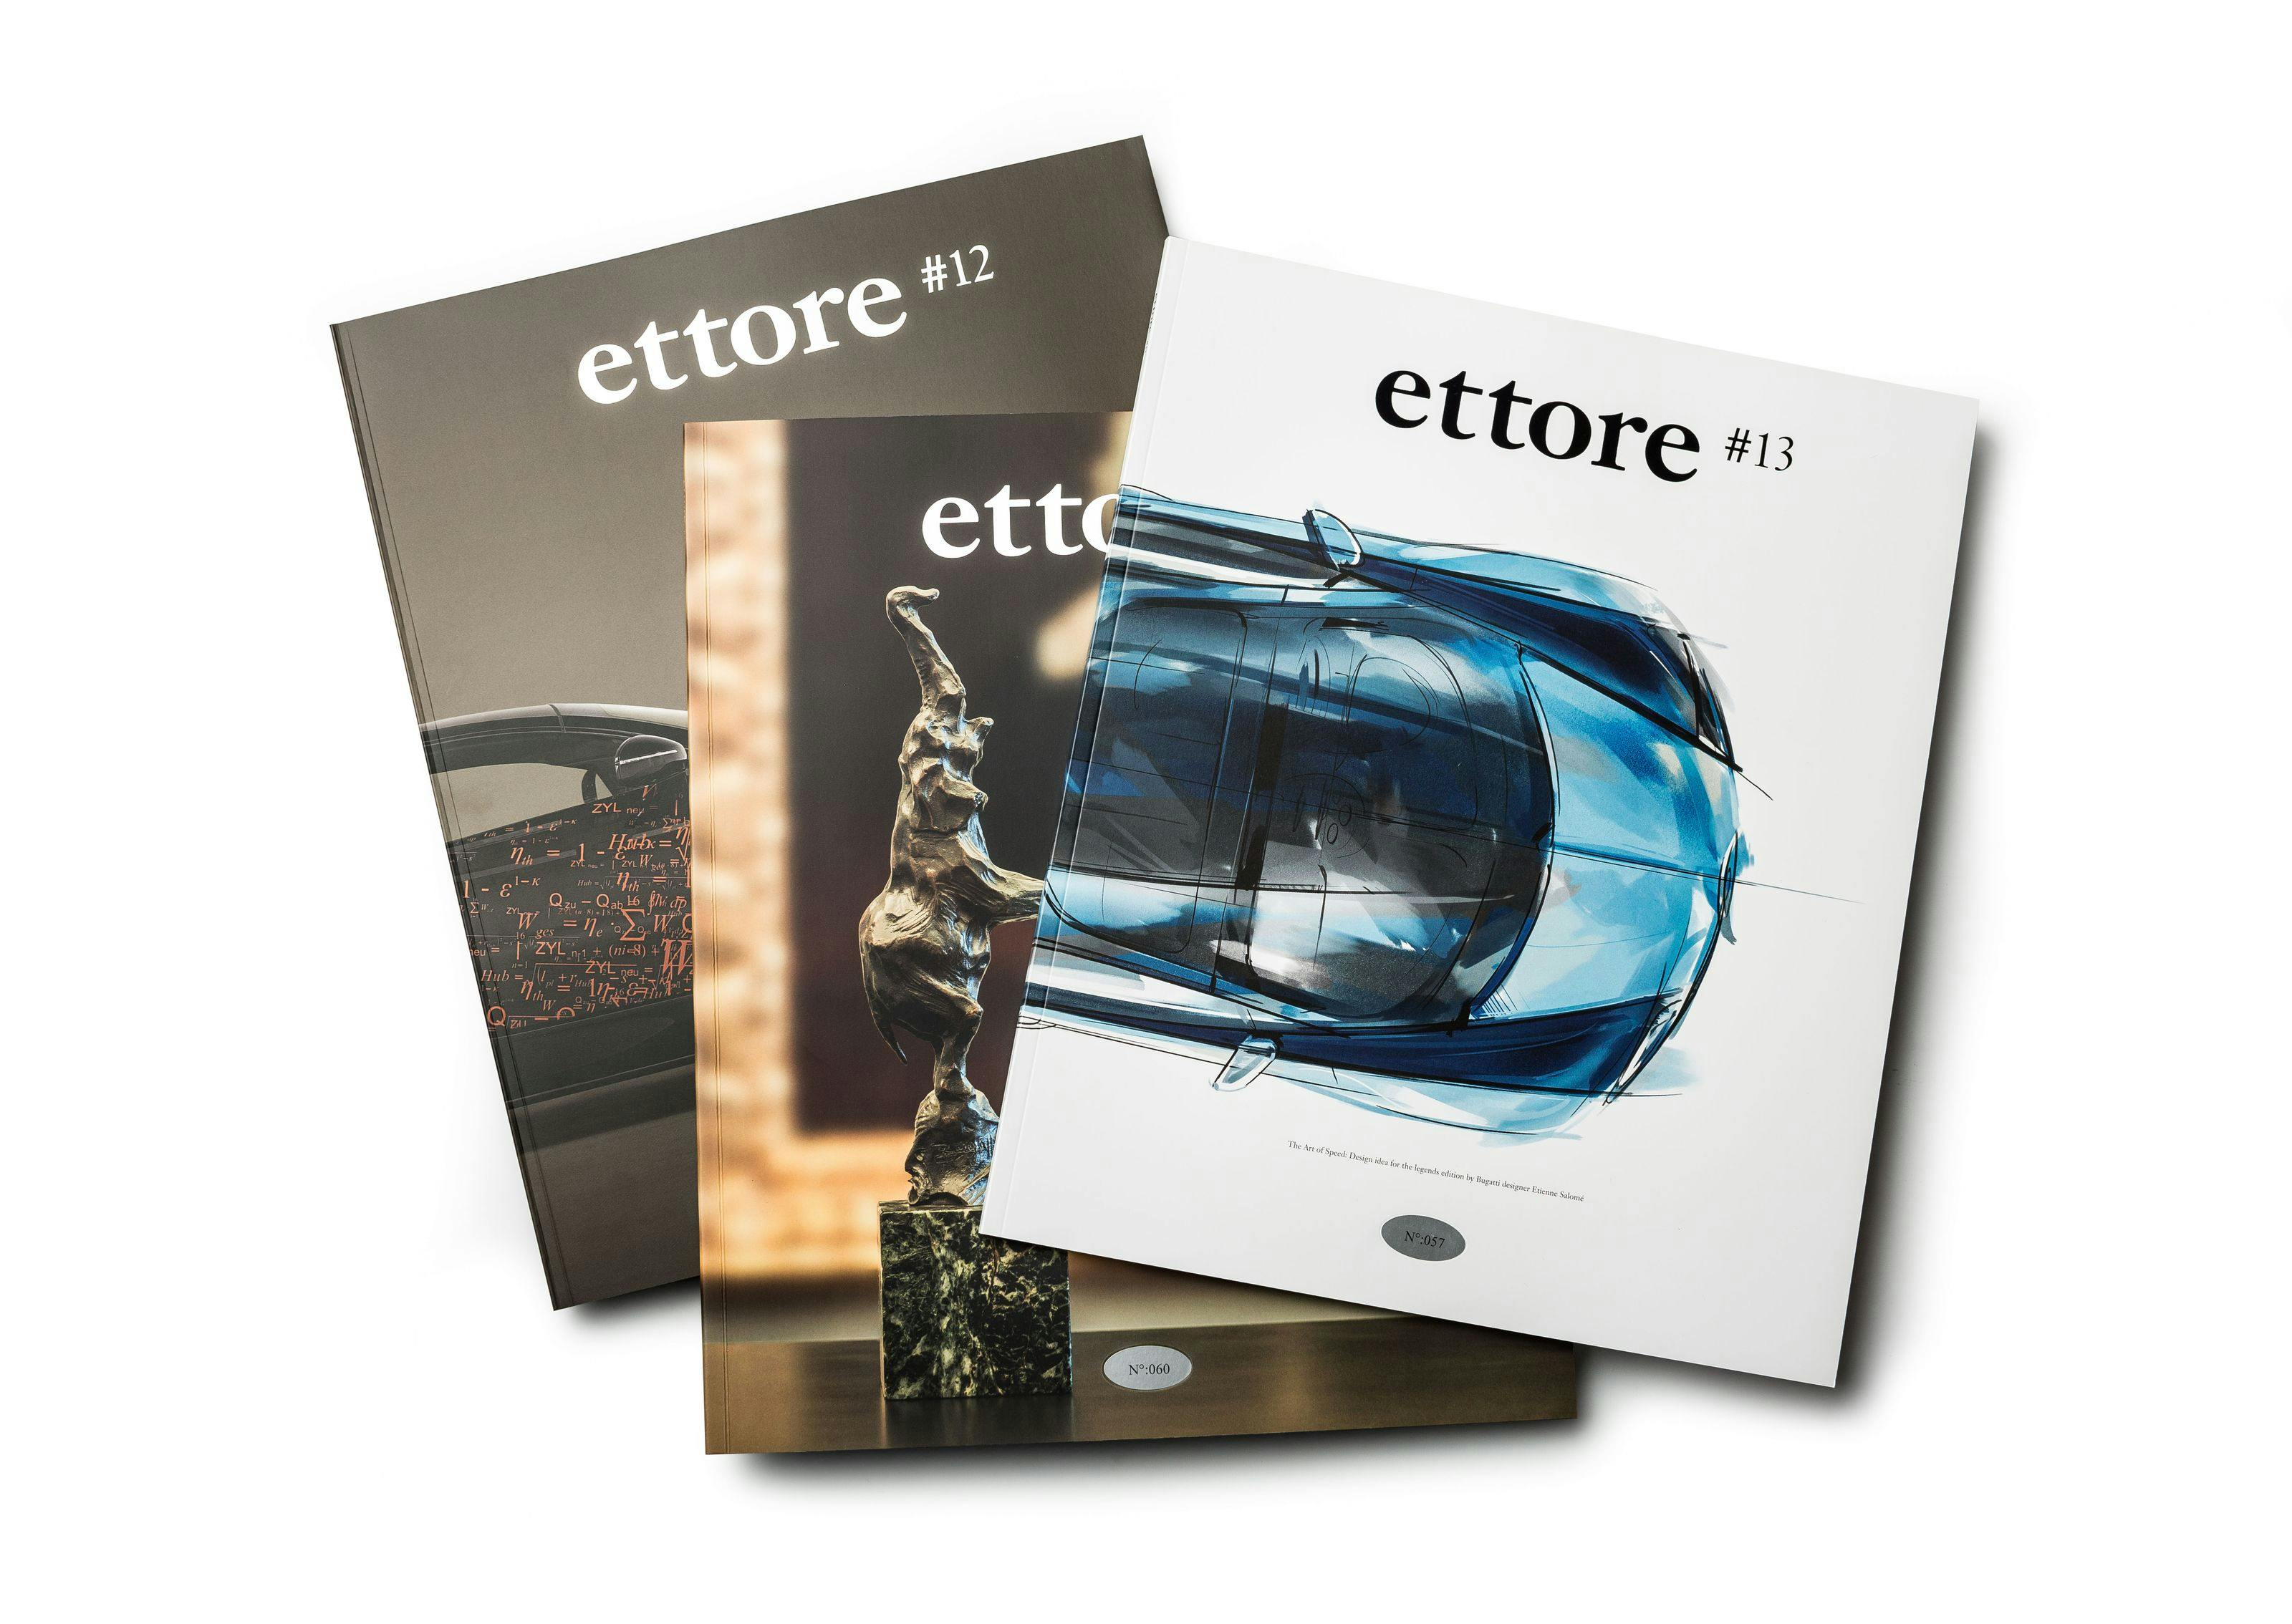 Automotive Brand Contest 2014 : le magazine client de Bugatti, ettore, reçoit une distinction du Rat für Formgebung